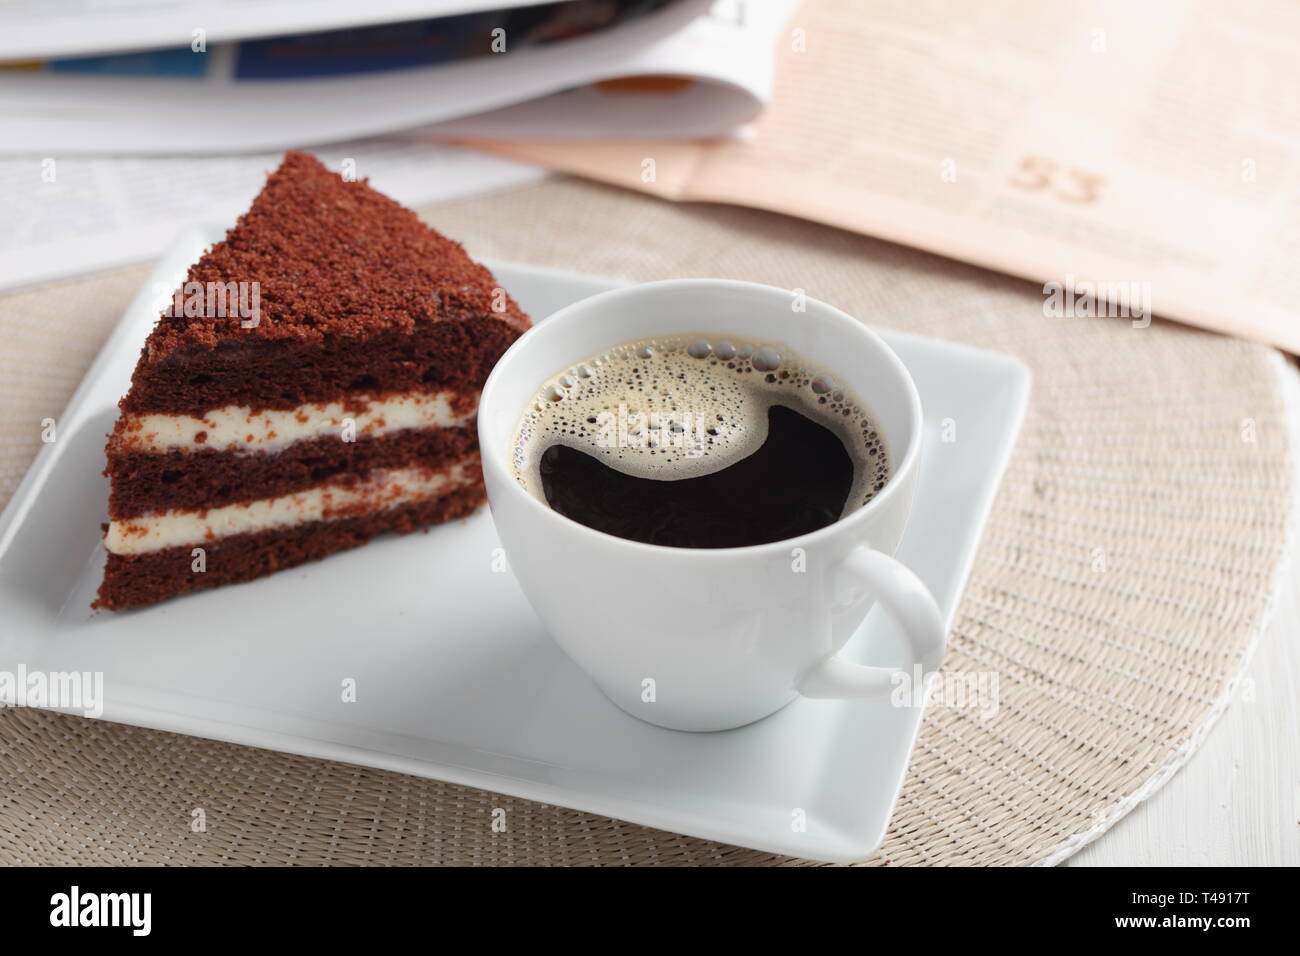 Le Petit Dejeuner Avec La Creme Au Chocolat Gateau Et Une Tasse De Cafe Noir Photo Stock Alamy